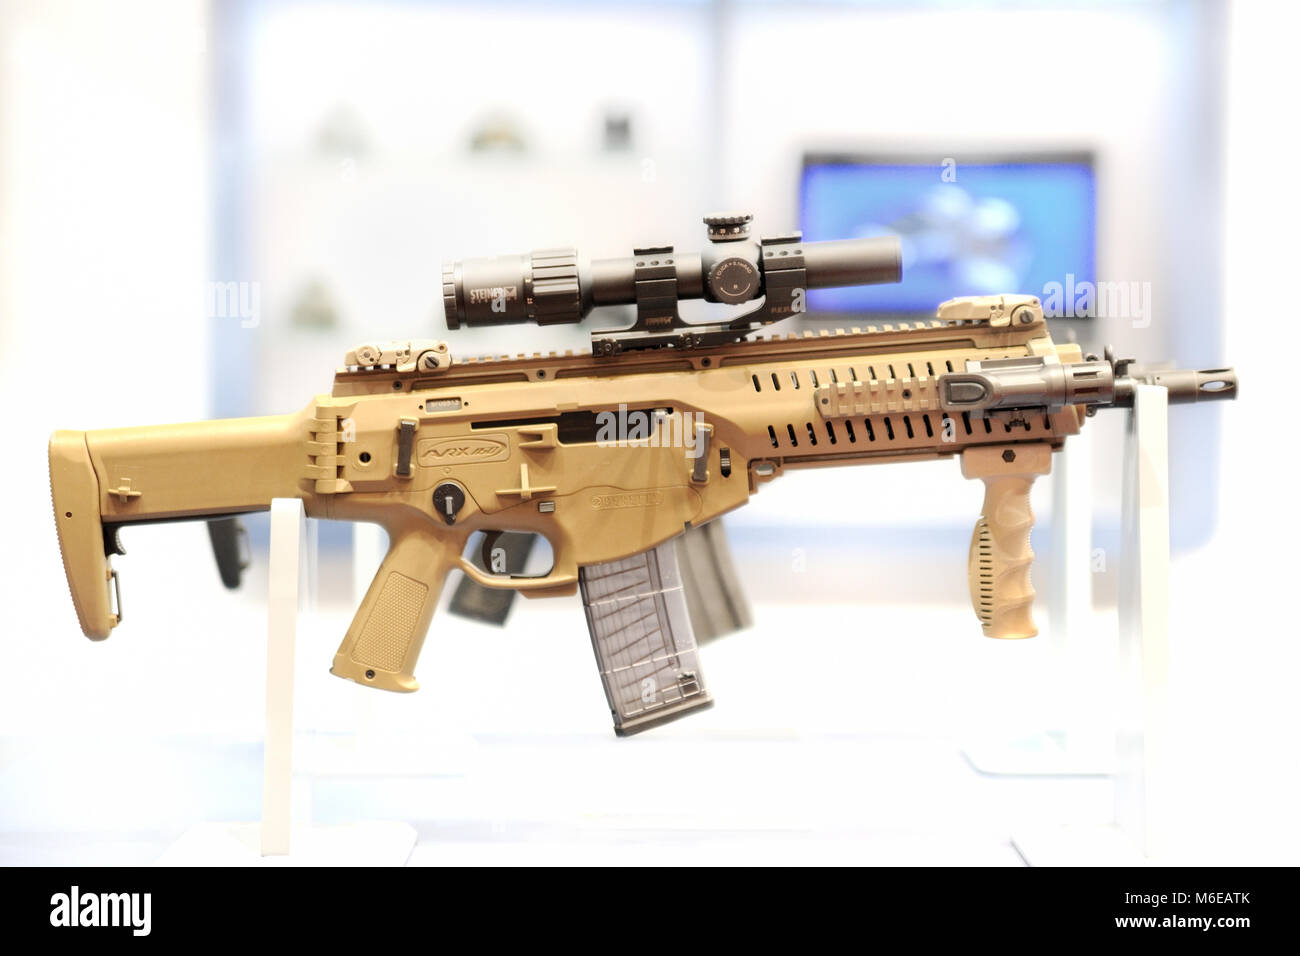 Beretta Assault Rifle desert tan ARX160 Stock Photo